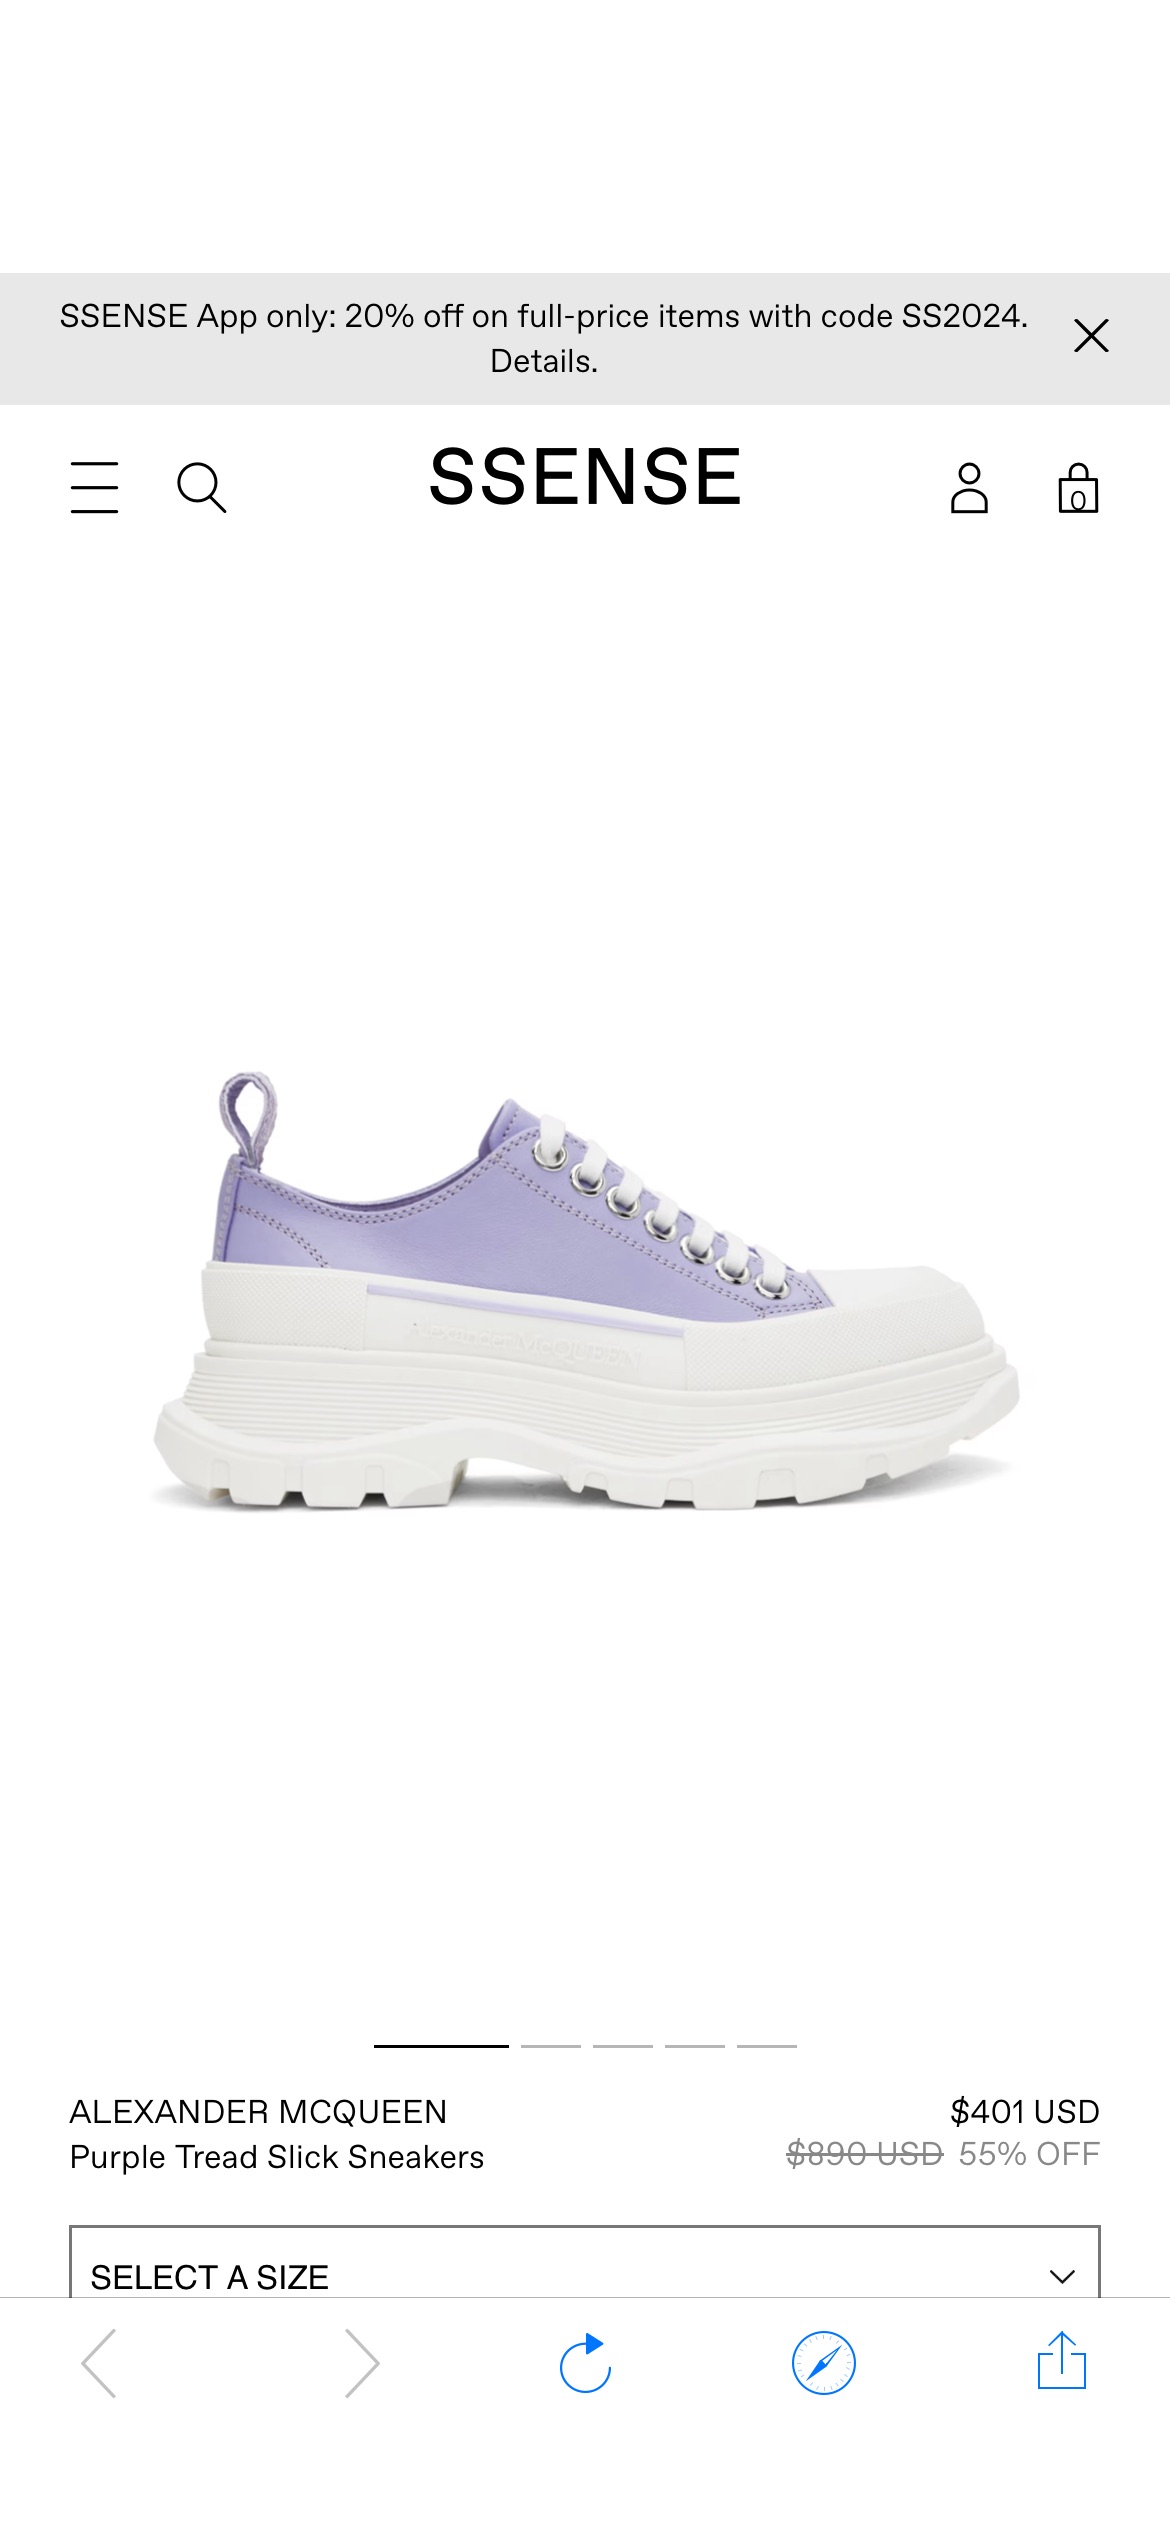 Purple Tread Slick Sneakers by Alexander McQueen on Sale